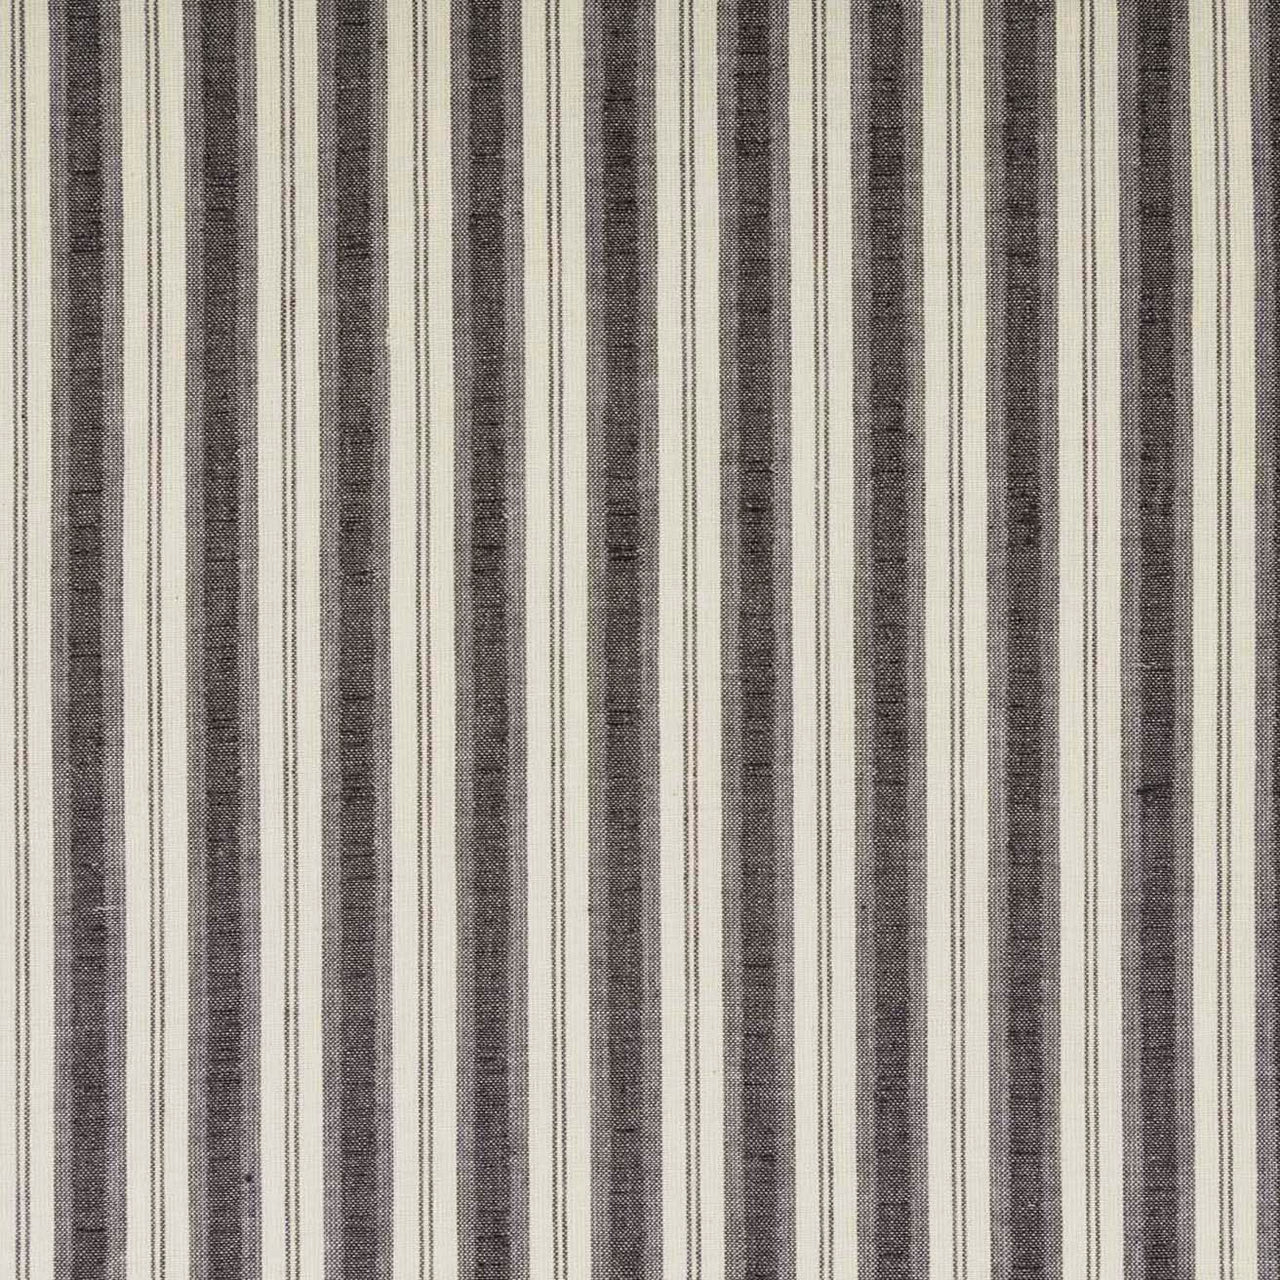 Ashmont Ticking Stripe Short Panel Set of 2 63x36 VHC Brands